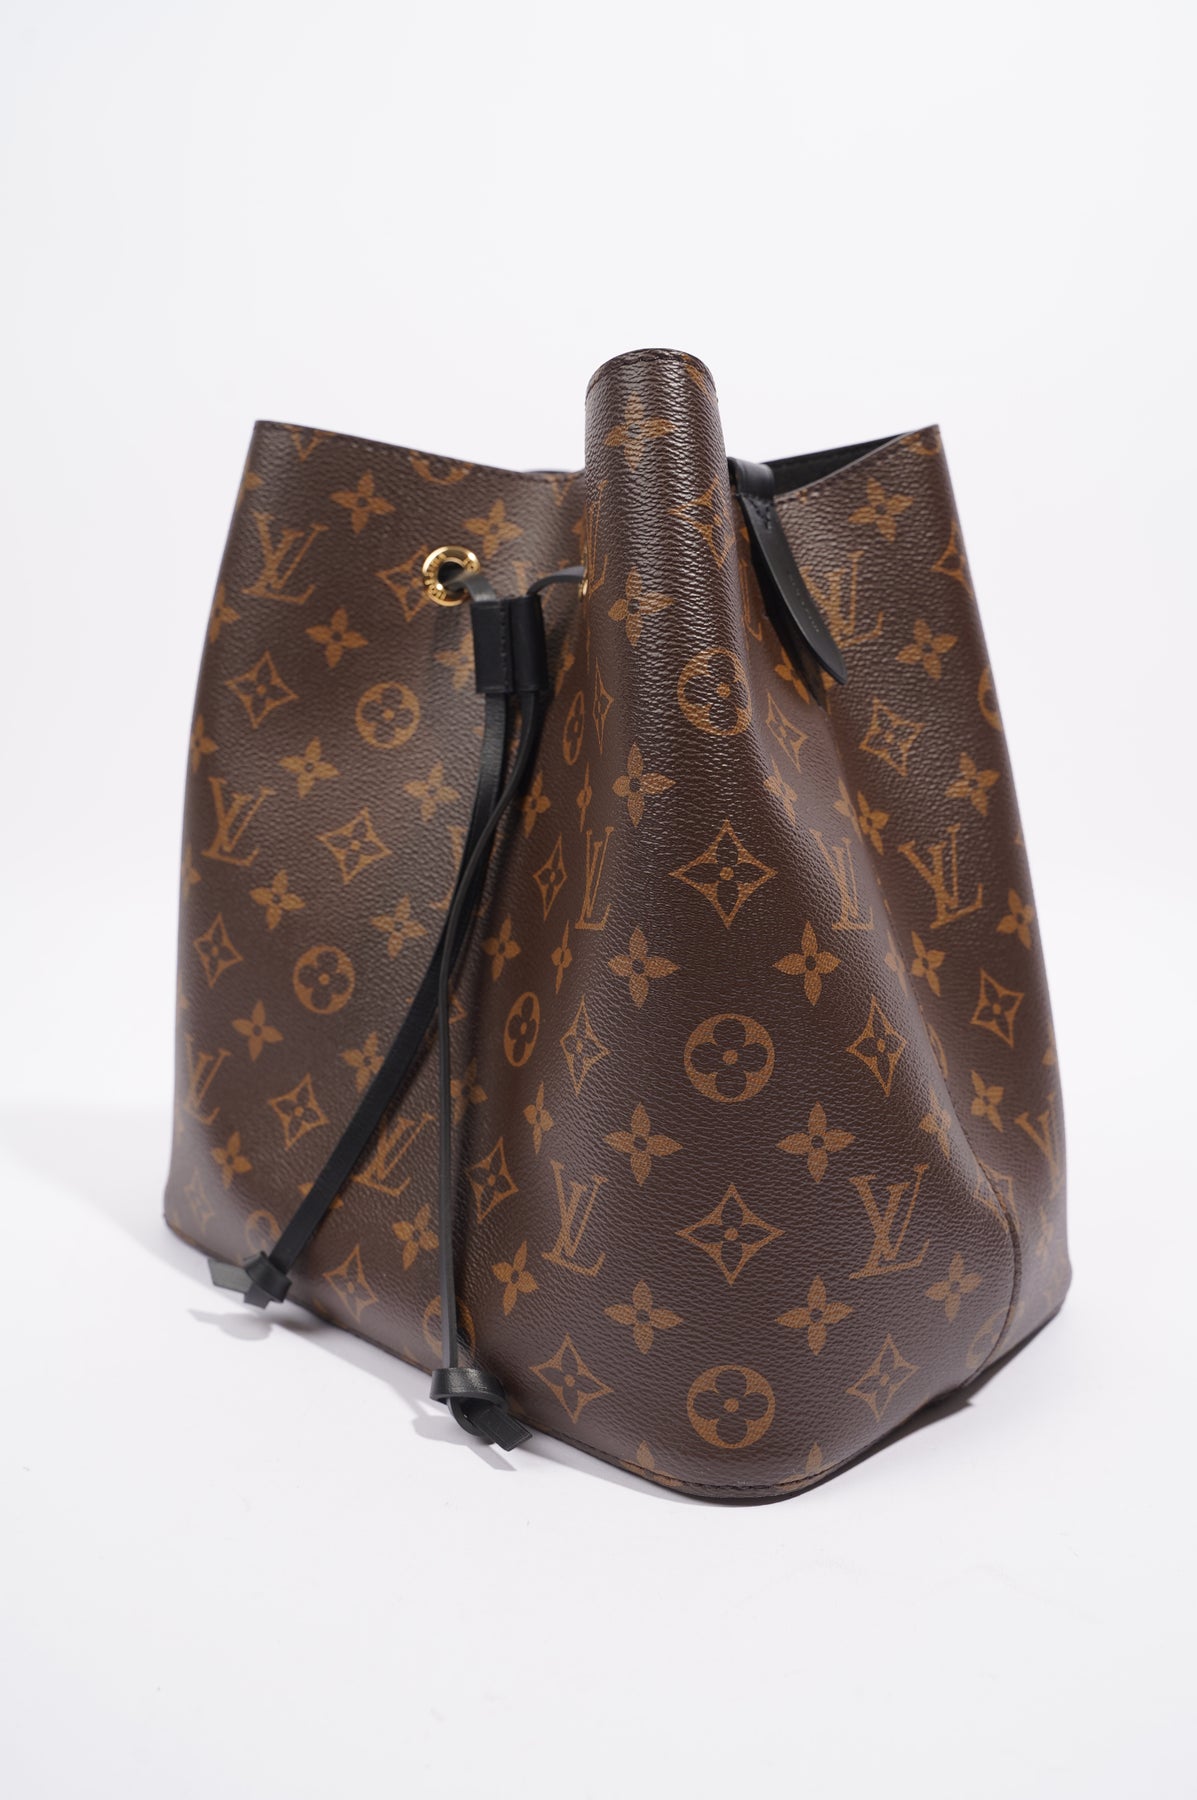 Louis Vuitton pre-owned 2019 neo Noe handbag